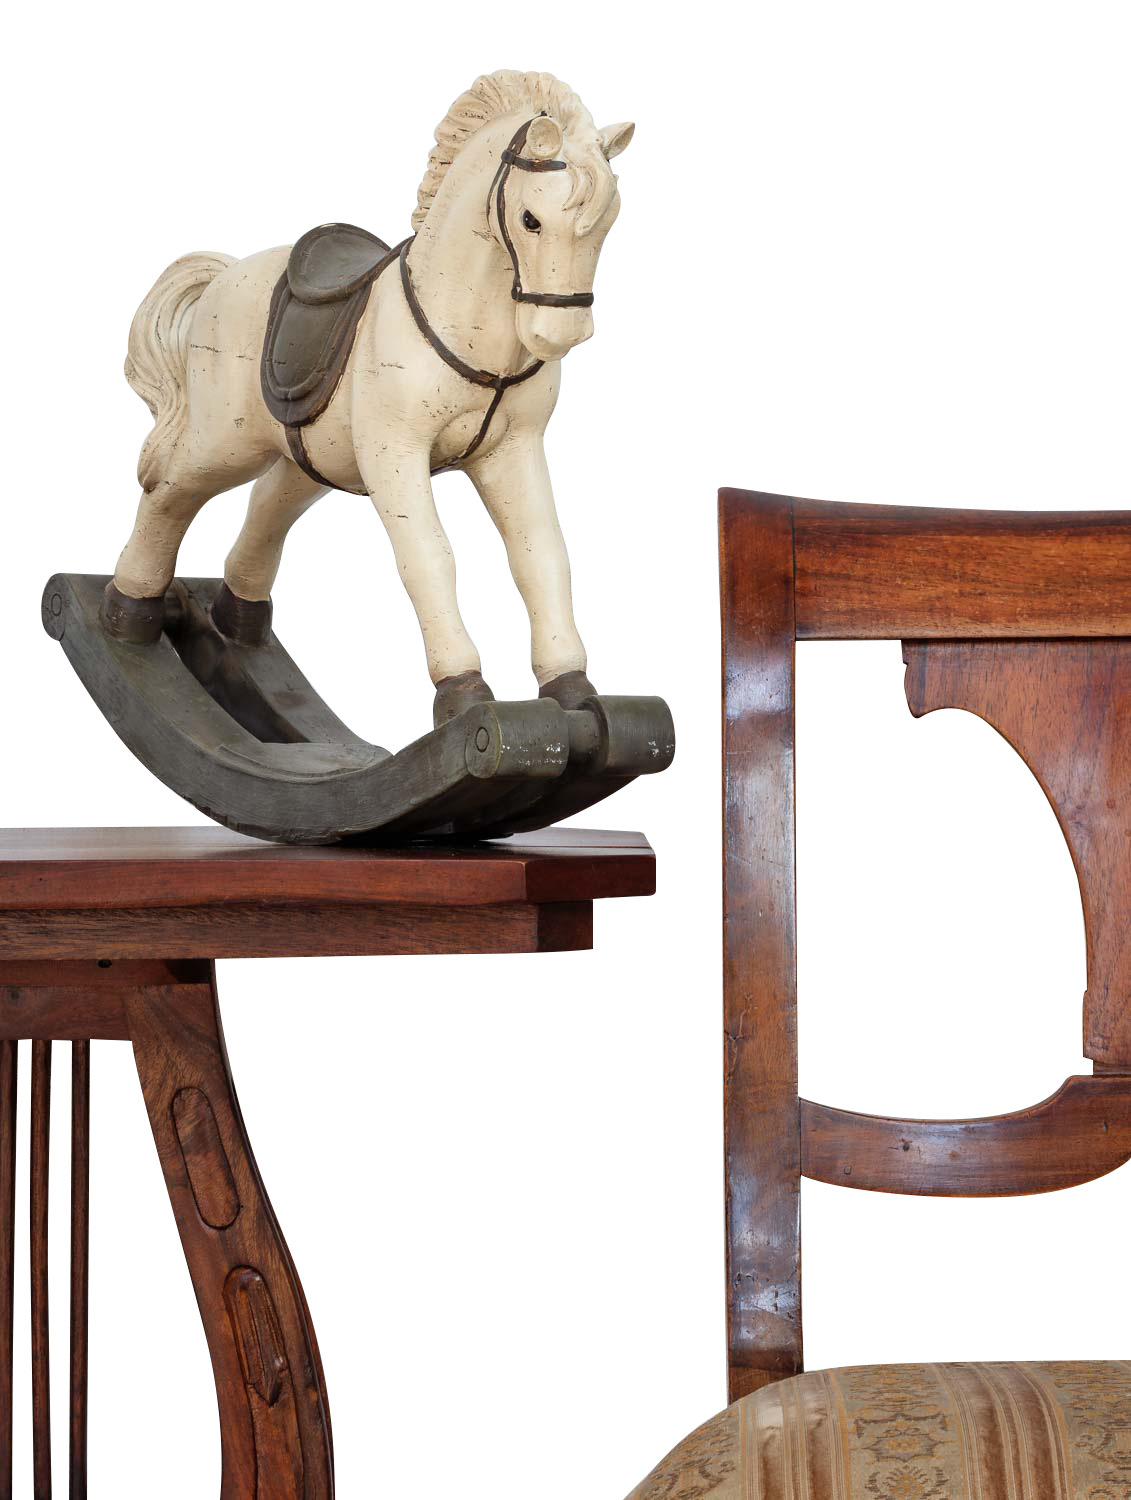 Verbaasd Slip schoenen toelage Hobbelpaard 38cm sculptuur paard figuur decoratie antieke stijl | Nederland